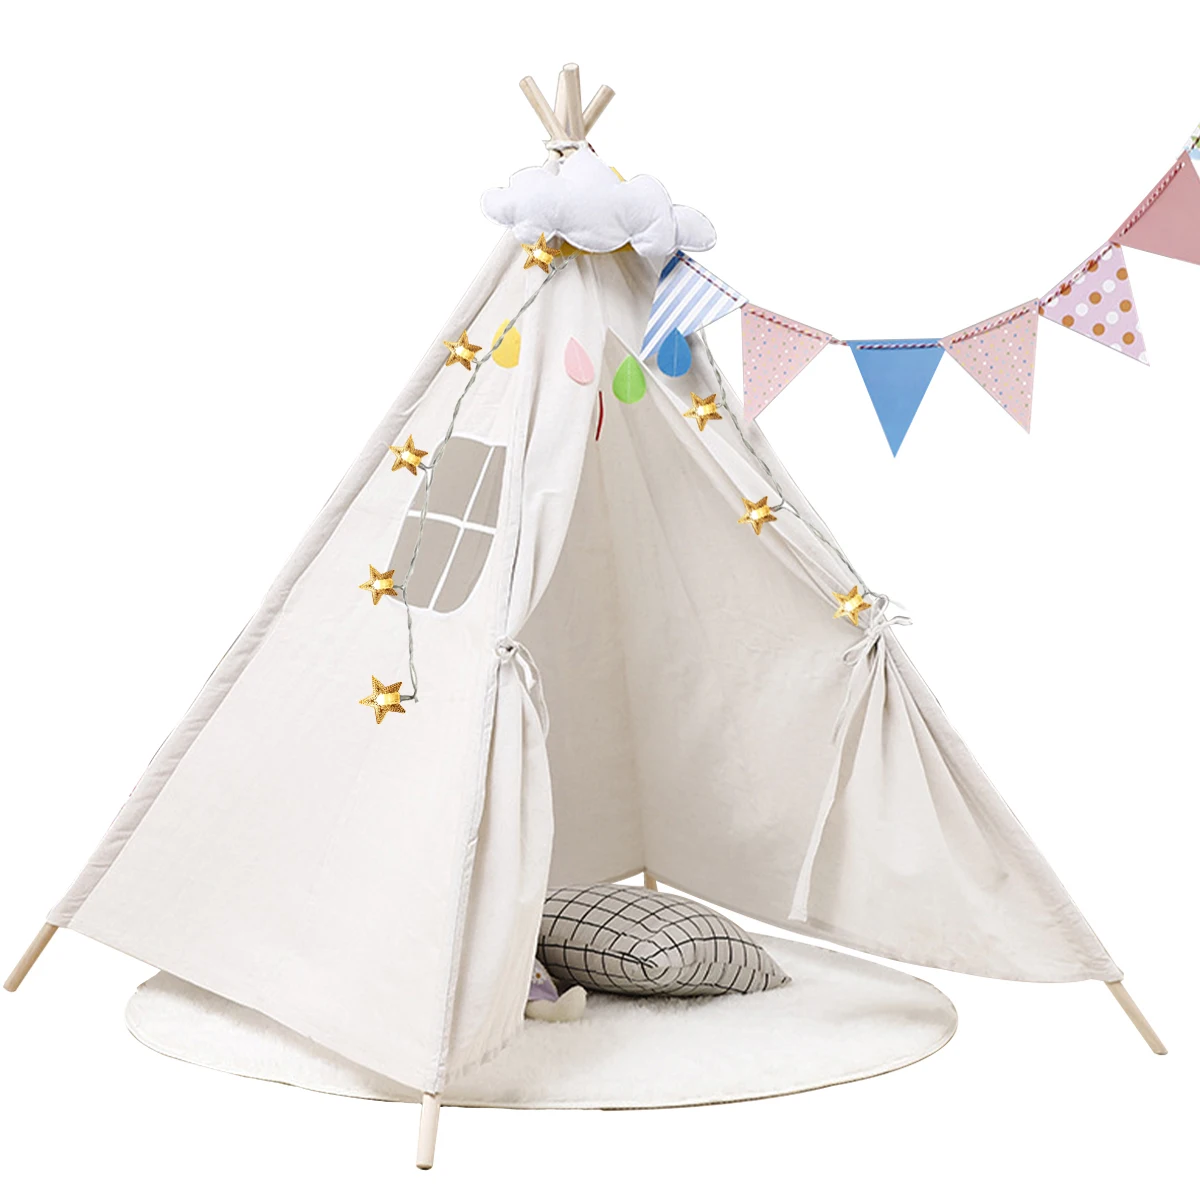 

Детская индийская палатка Toys3.9 x 3,9 x футов со светодиодной гирляндой и окнами вигвам палатка создает конфиденциальное пространство сказочн...